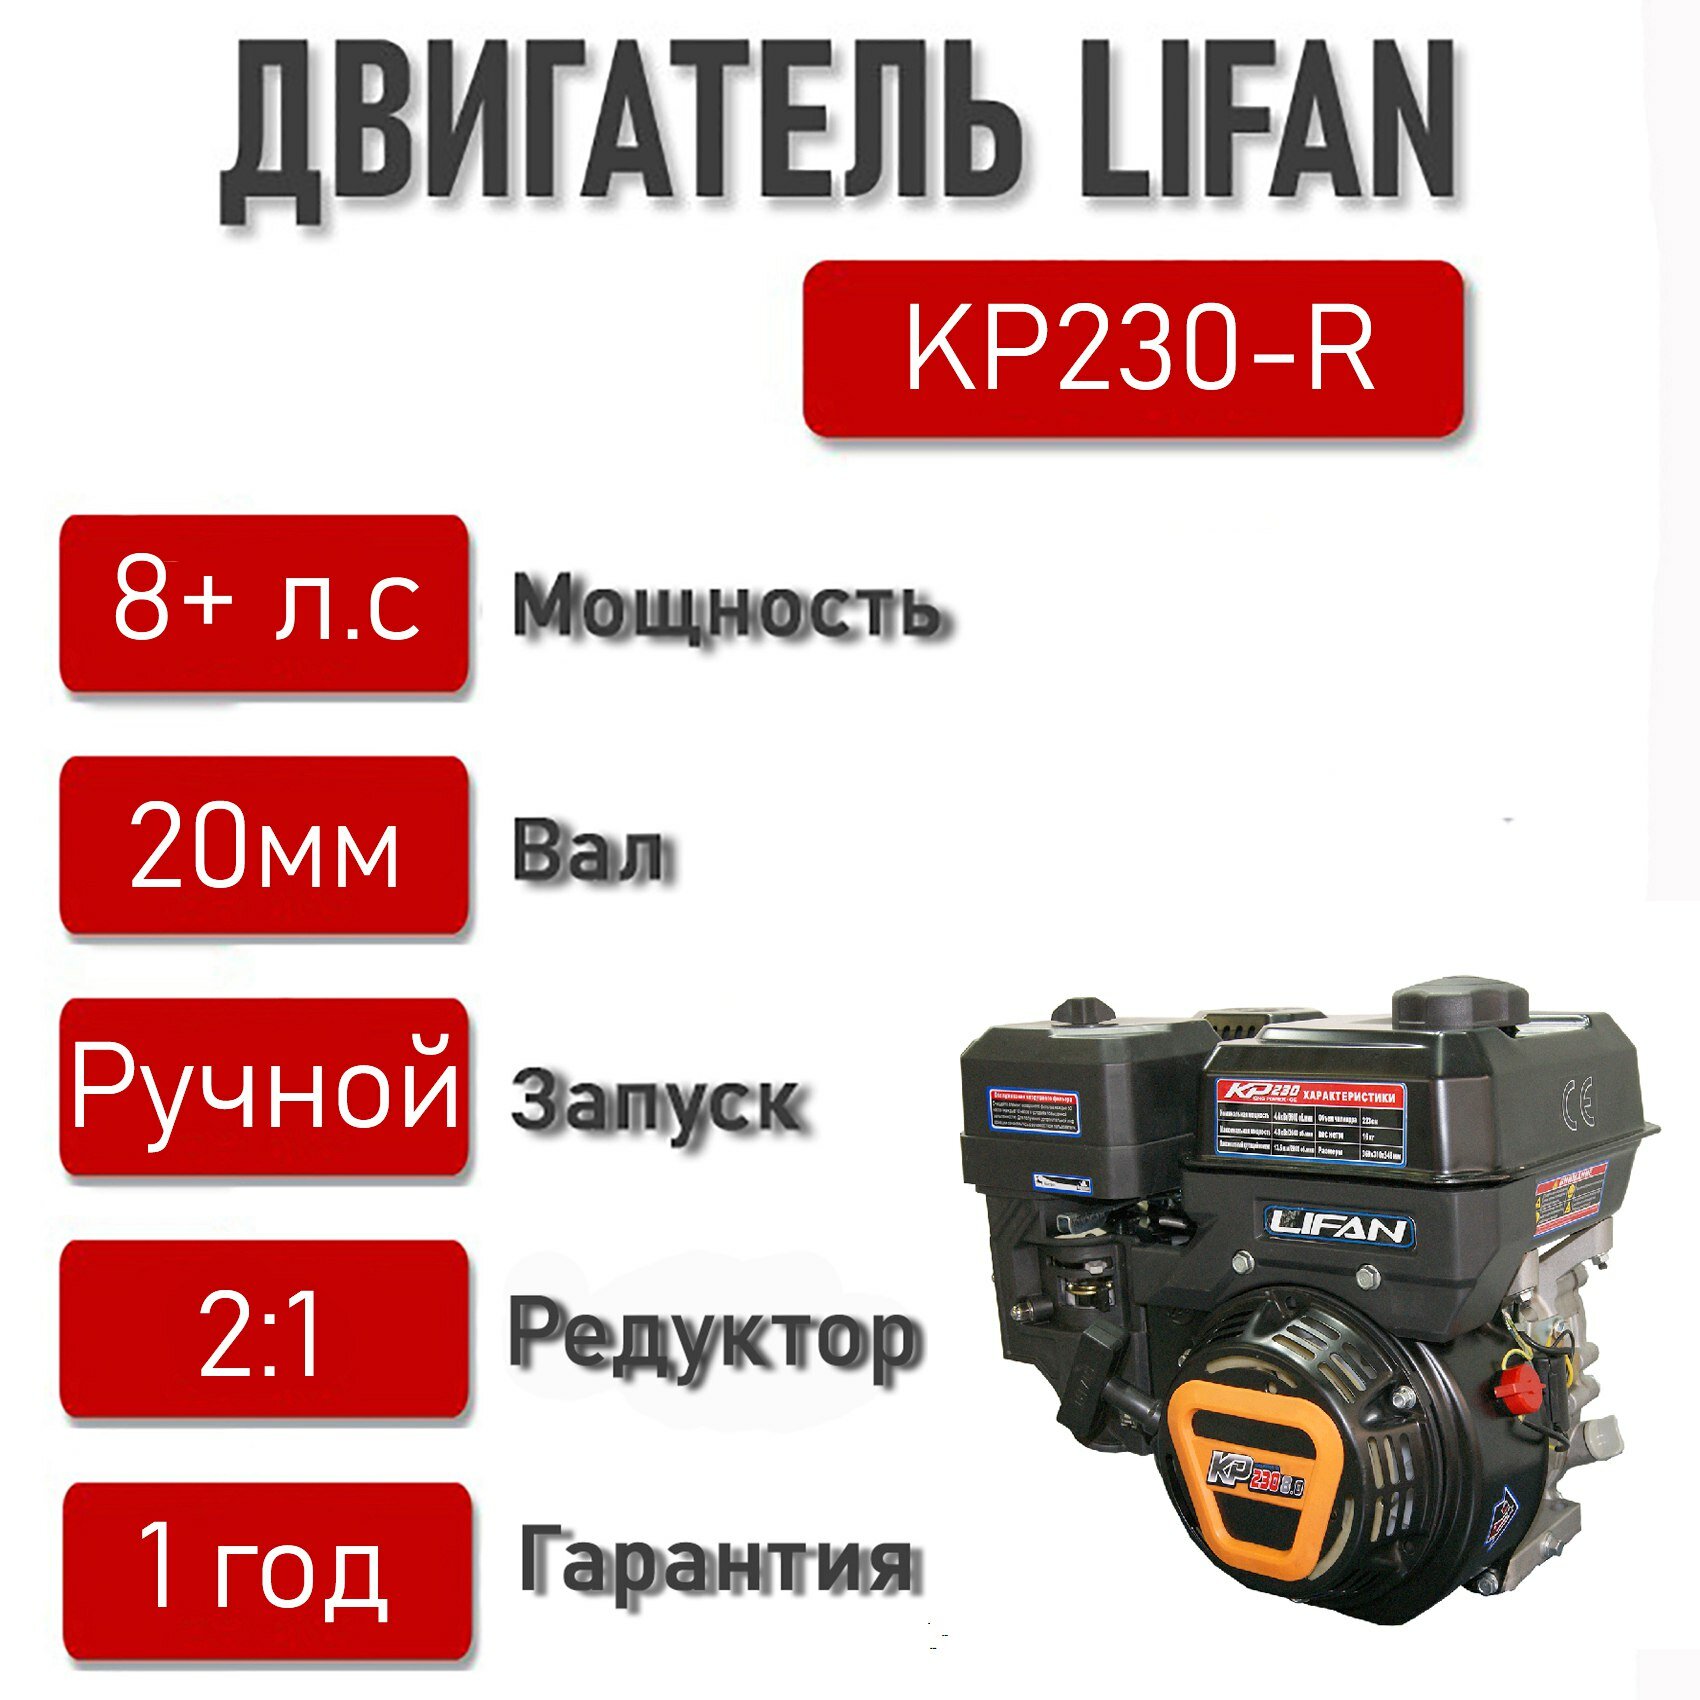 Двигатель LIFAN 8+ л. с. KP230-R с автоматическим сцеплением и пониж. редуктором 2:1